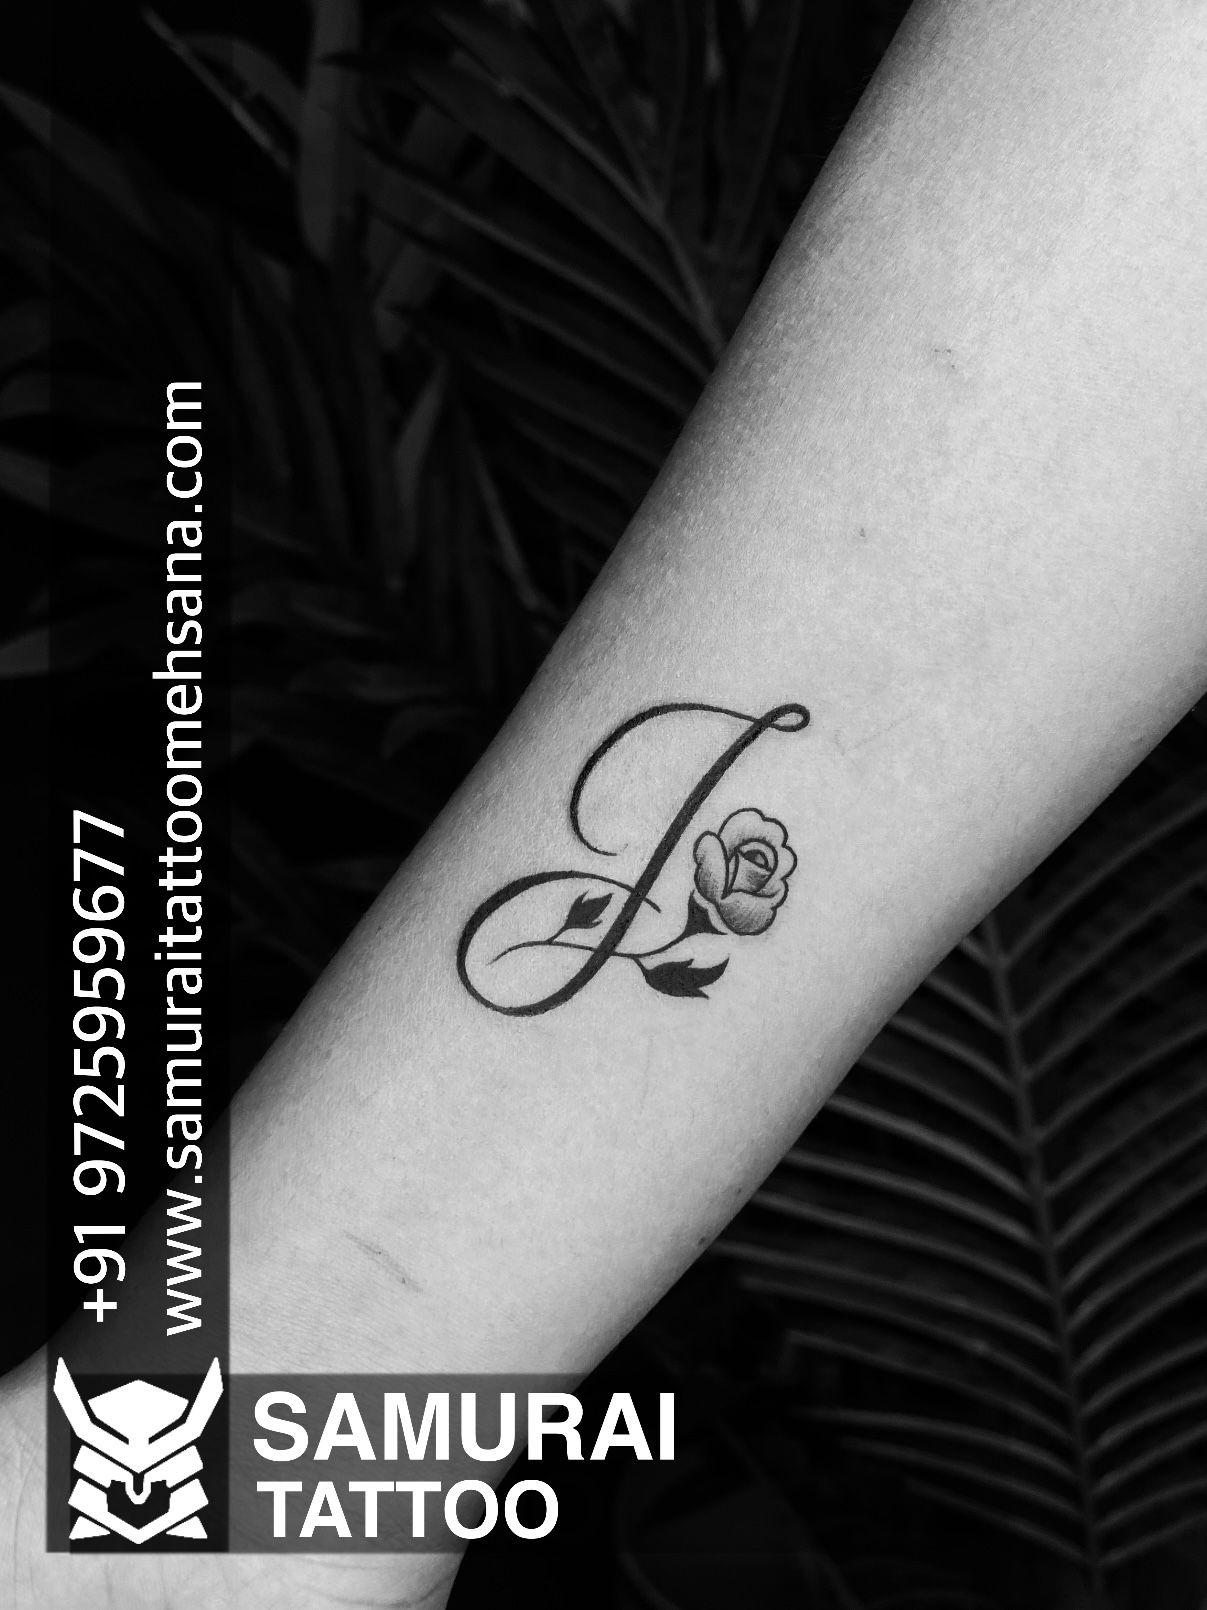 Tattoo uploaded by Vipul Chaudhary • J Font tattoo